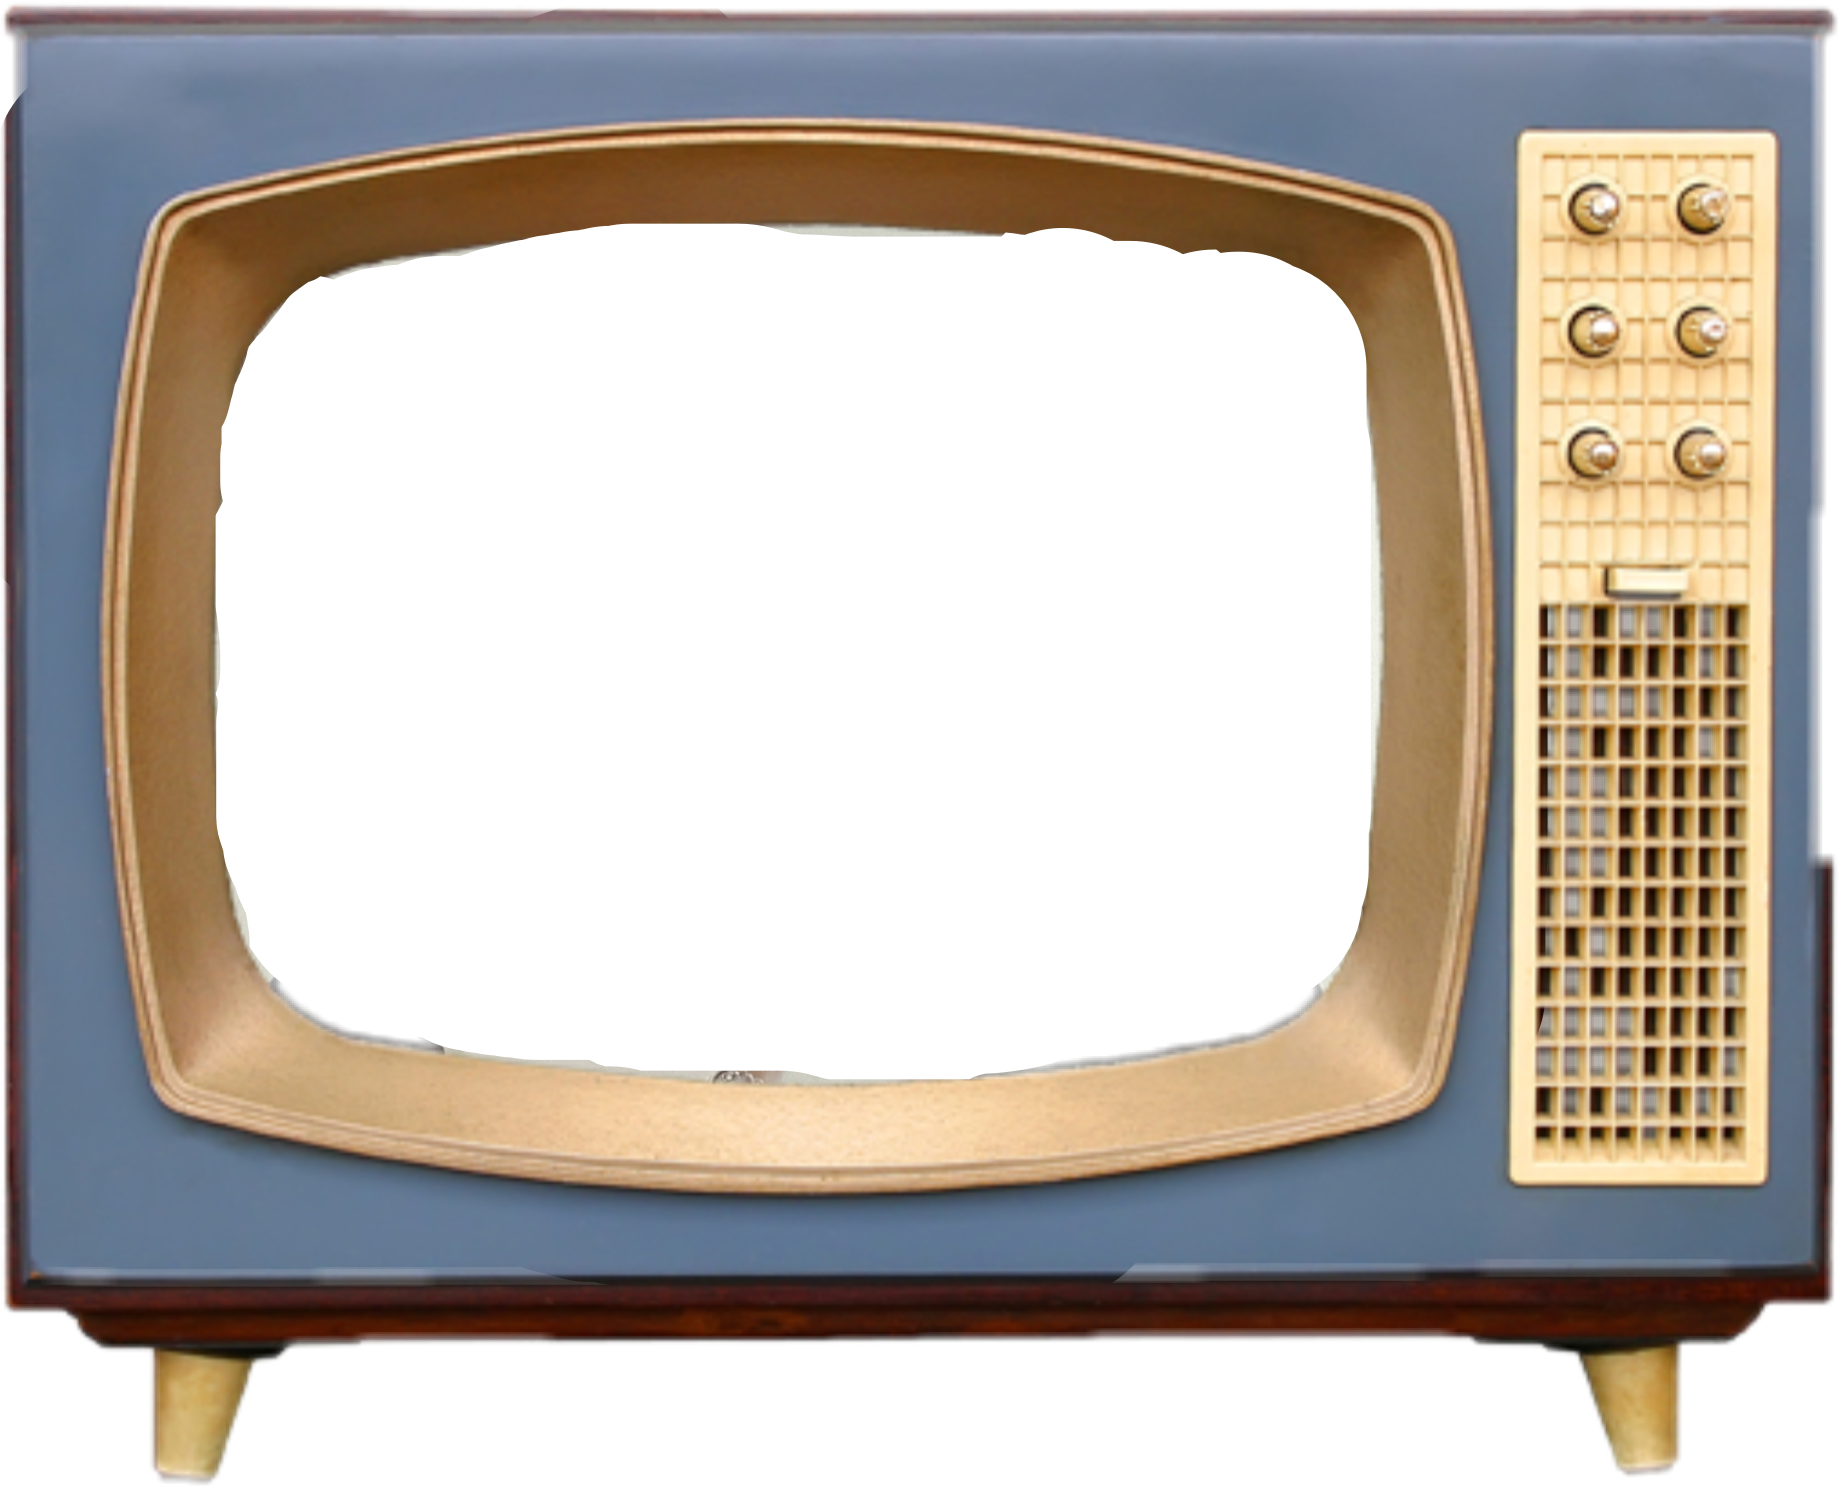 Старый телевизор фото для фотошопа